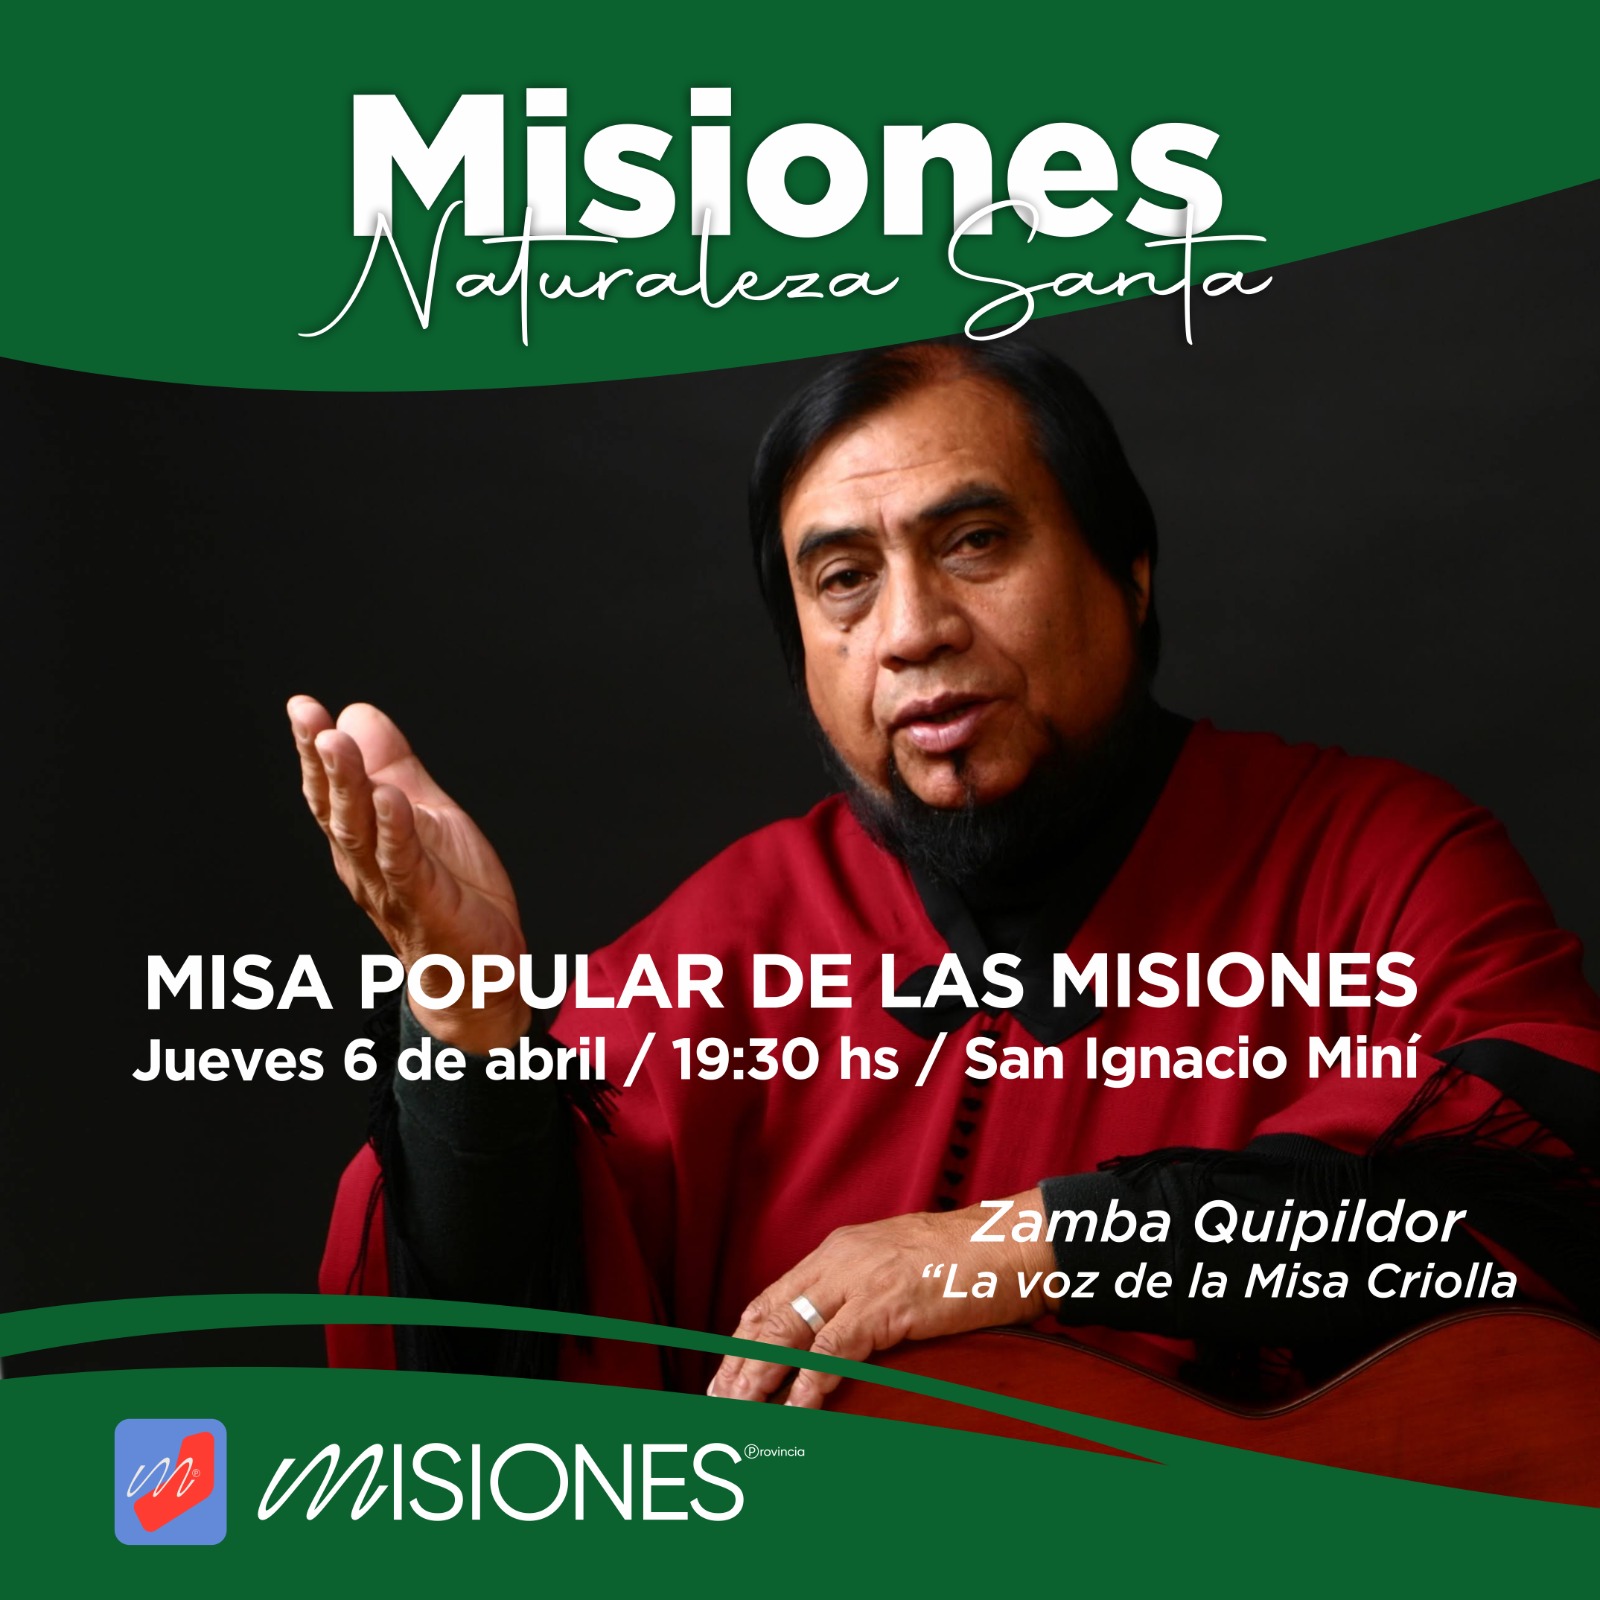 La Misa Criolla y la Misa Popular de las Misiones serán concelebradas este jueves en San Ignacio imagen-1